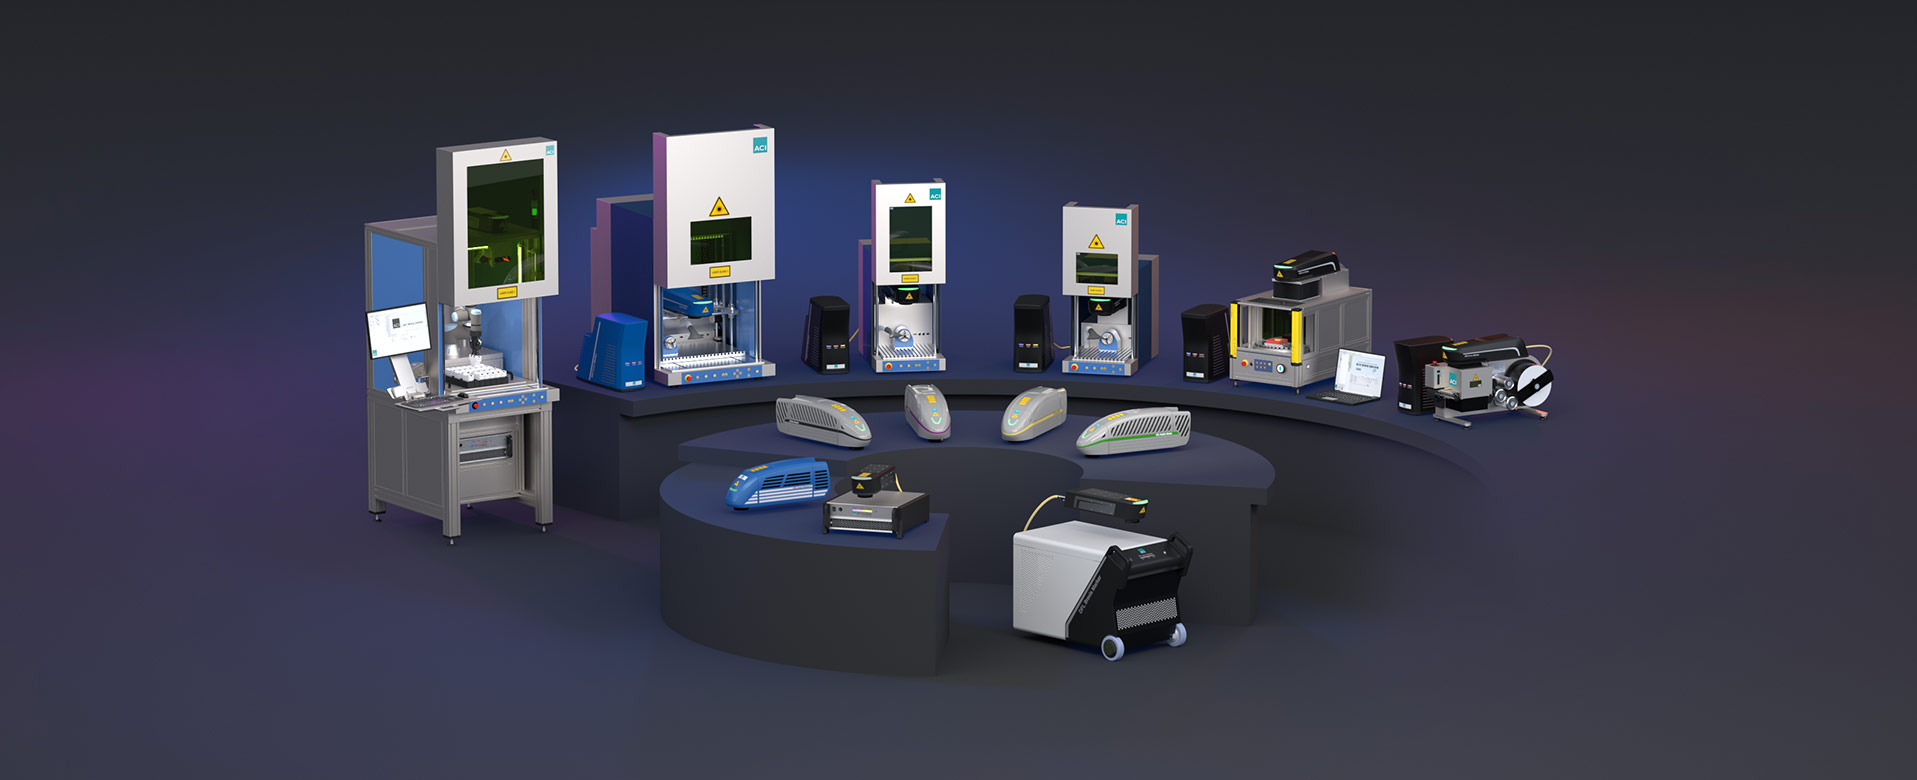 Produktpalette der ACI Laser GmbH bestehend aus Laserstationen und Lasersystemen zum Gravieren, Markieren und Trimmen